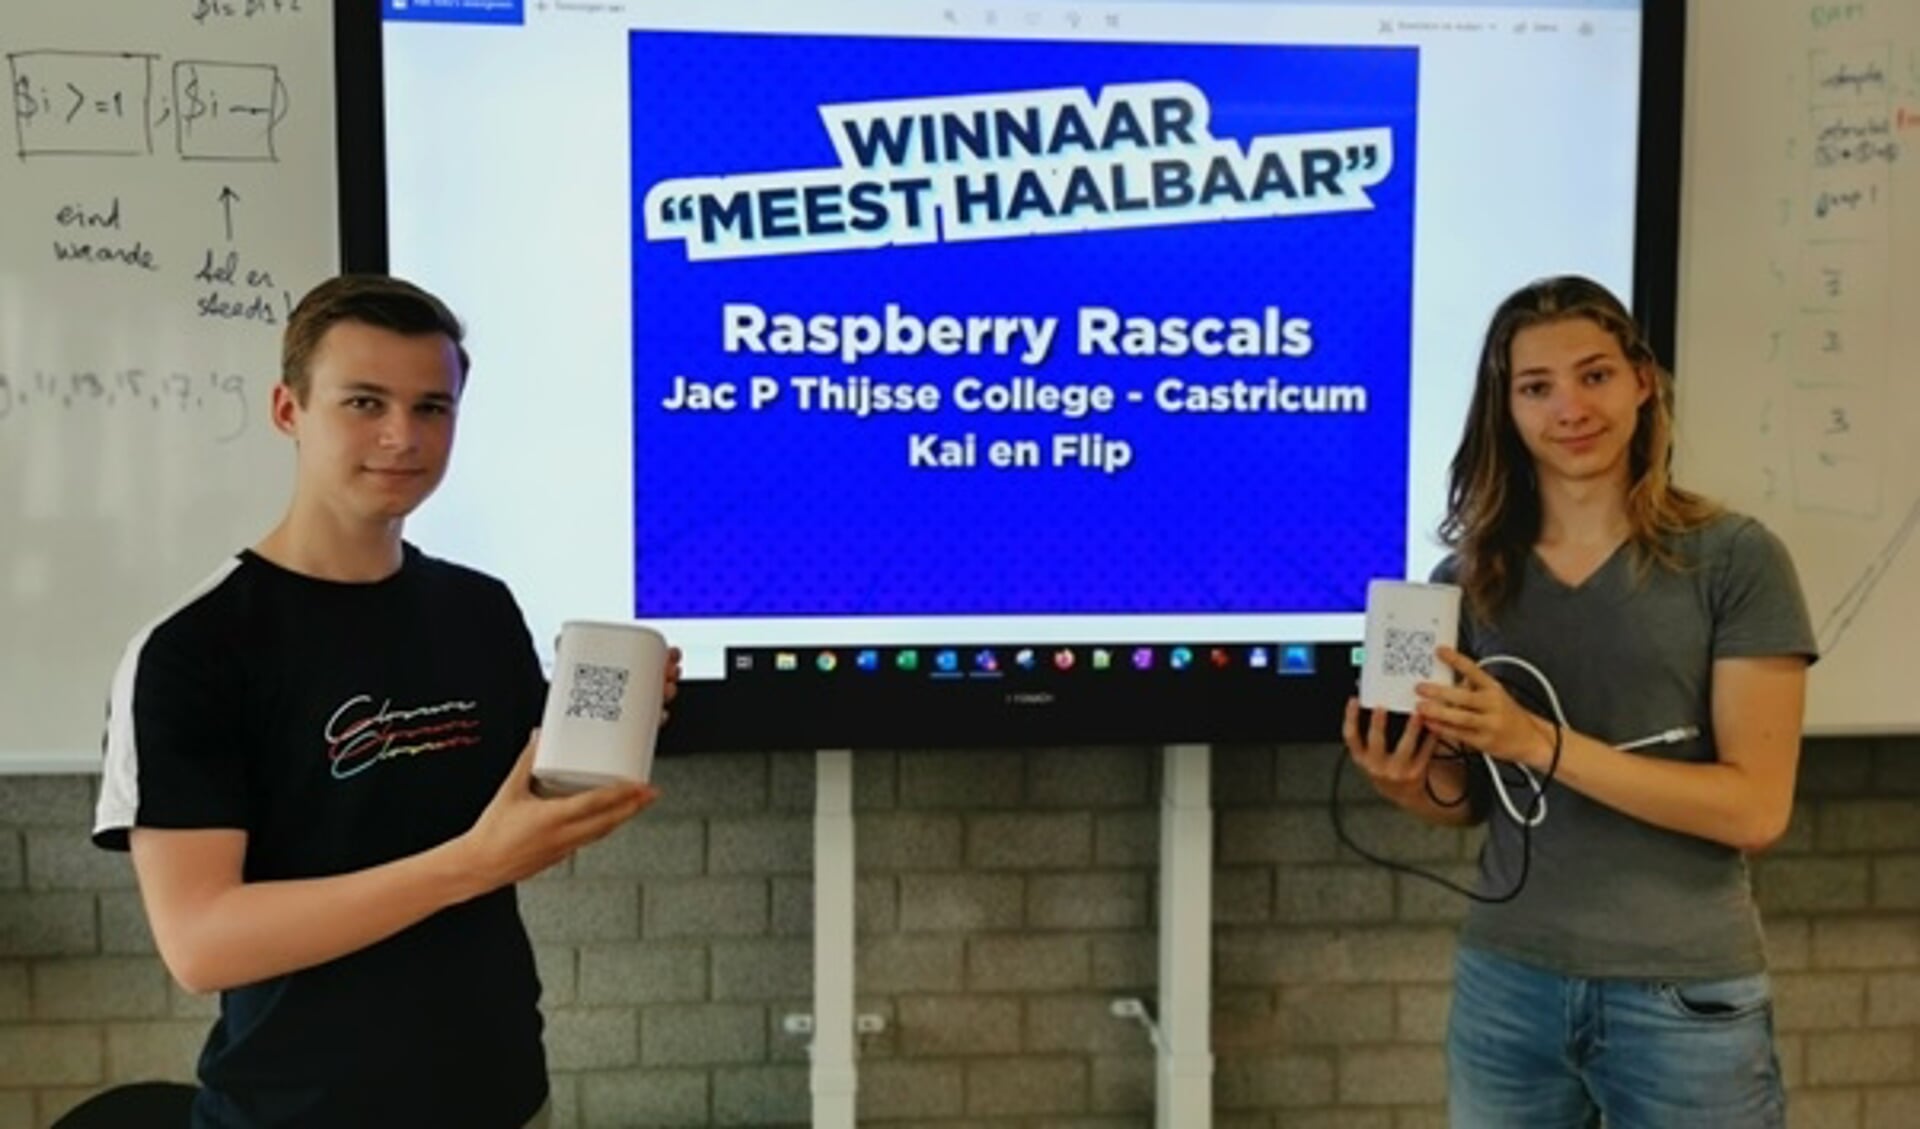  Kai Deumers en Flip van Marle met hun winnende product.